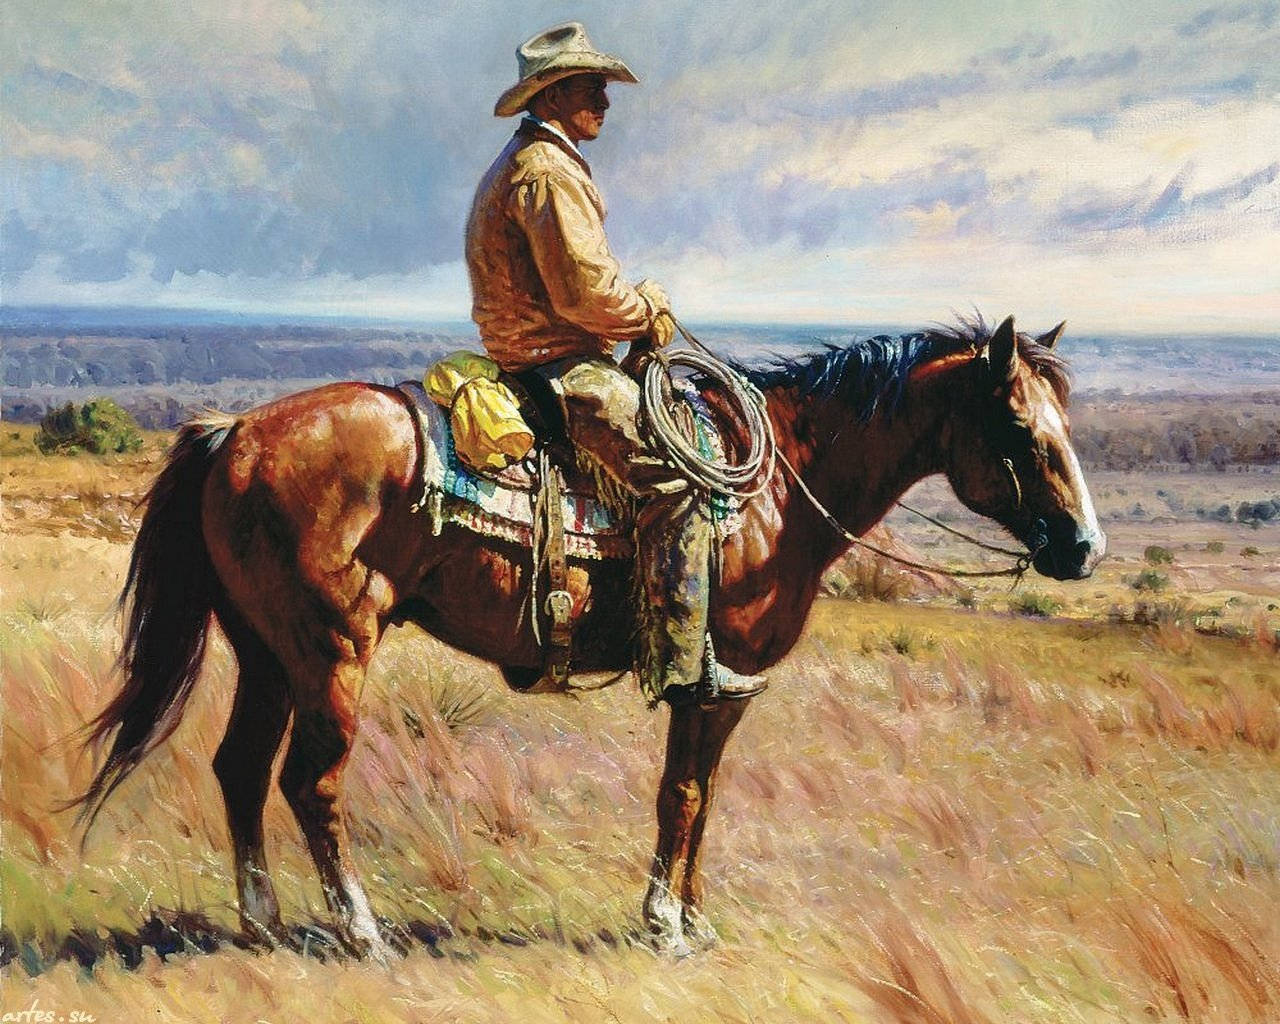 Ettsteg Av Frihet - En Amerikansk Cowboy. Wallpaper